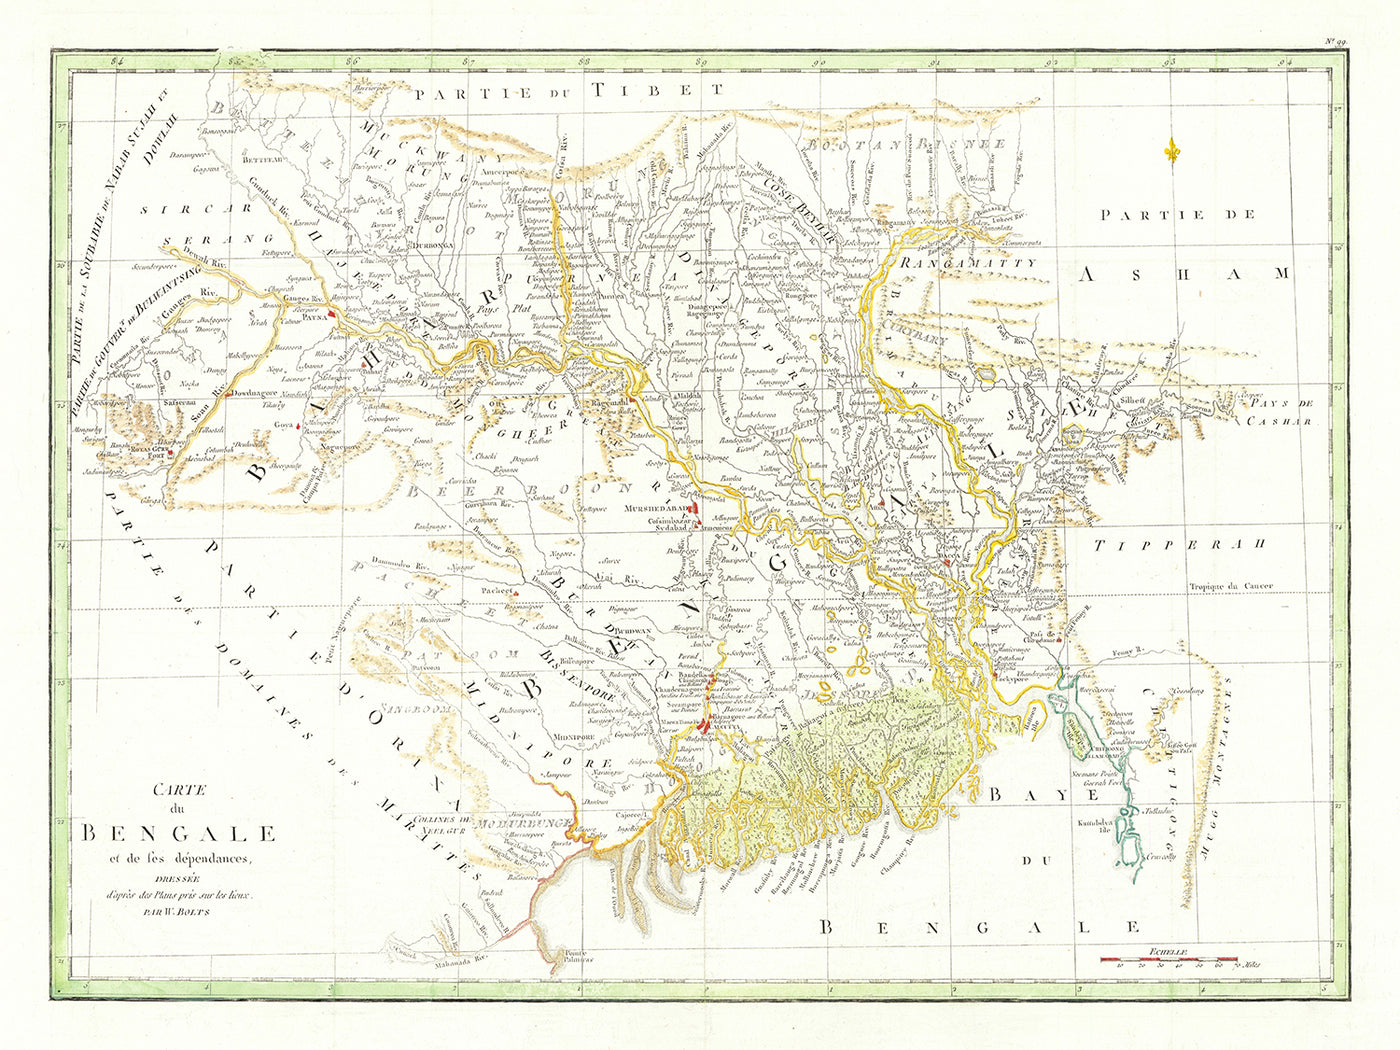 Alte Karte von Ostindien und Bangladesch von William Bolts, 1773: Kalkutta, Dacca, Patna, Murshidabad